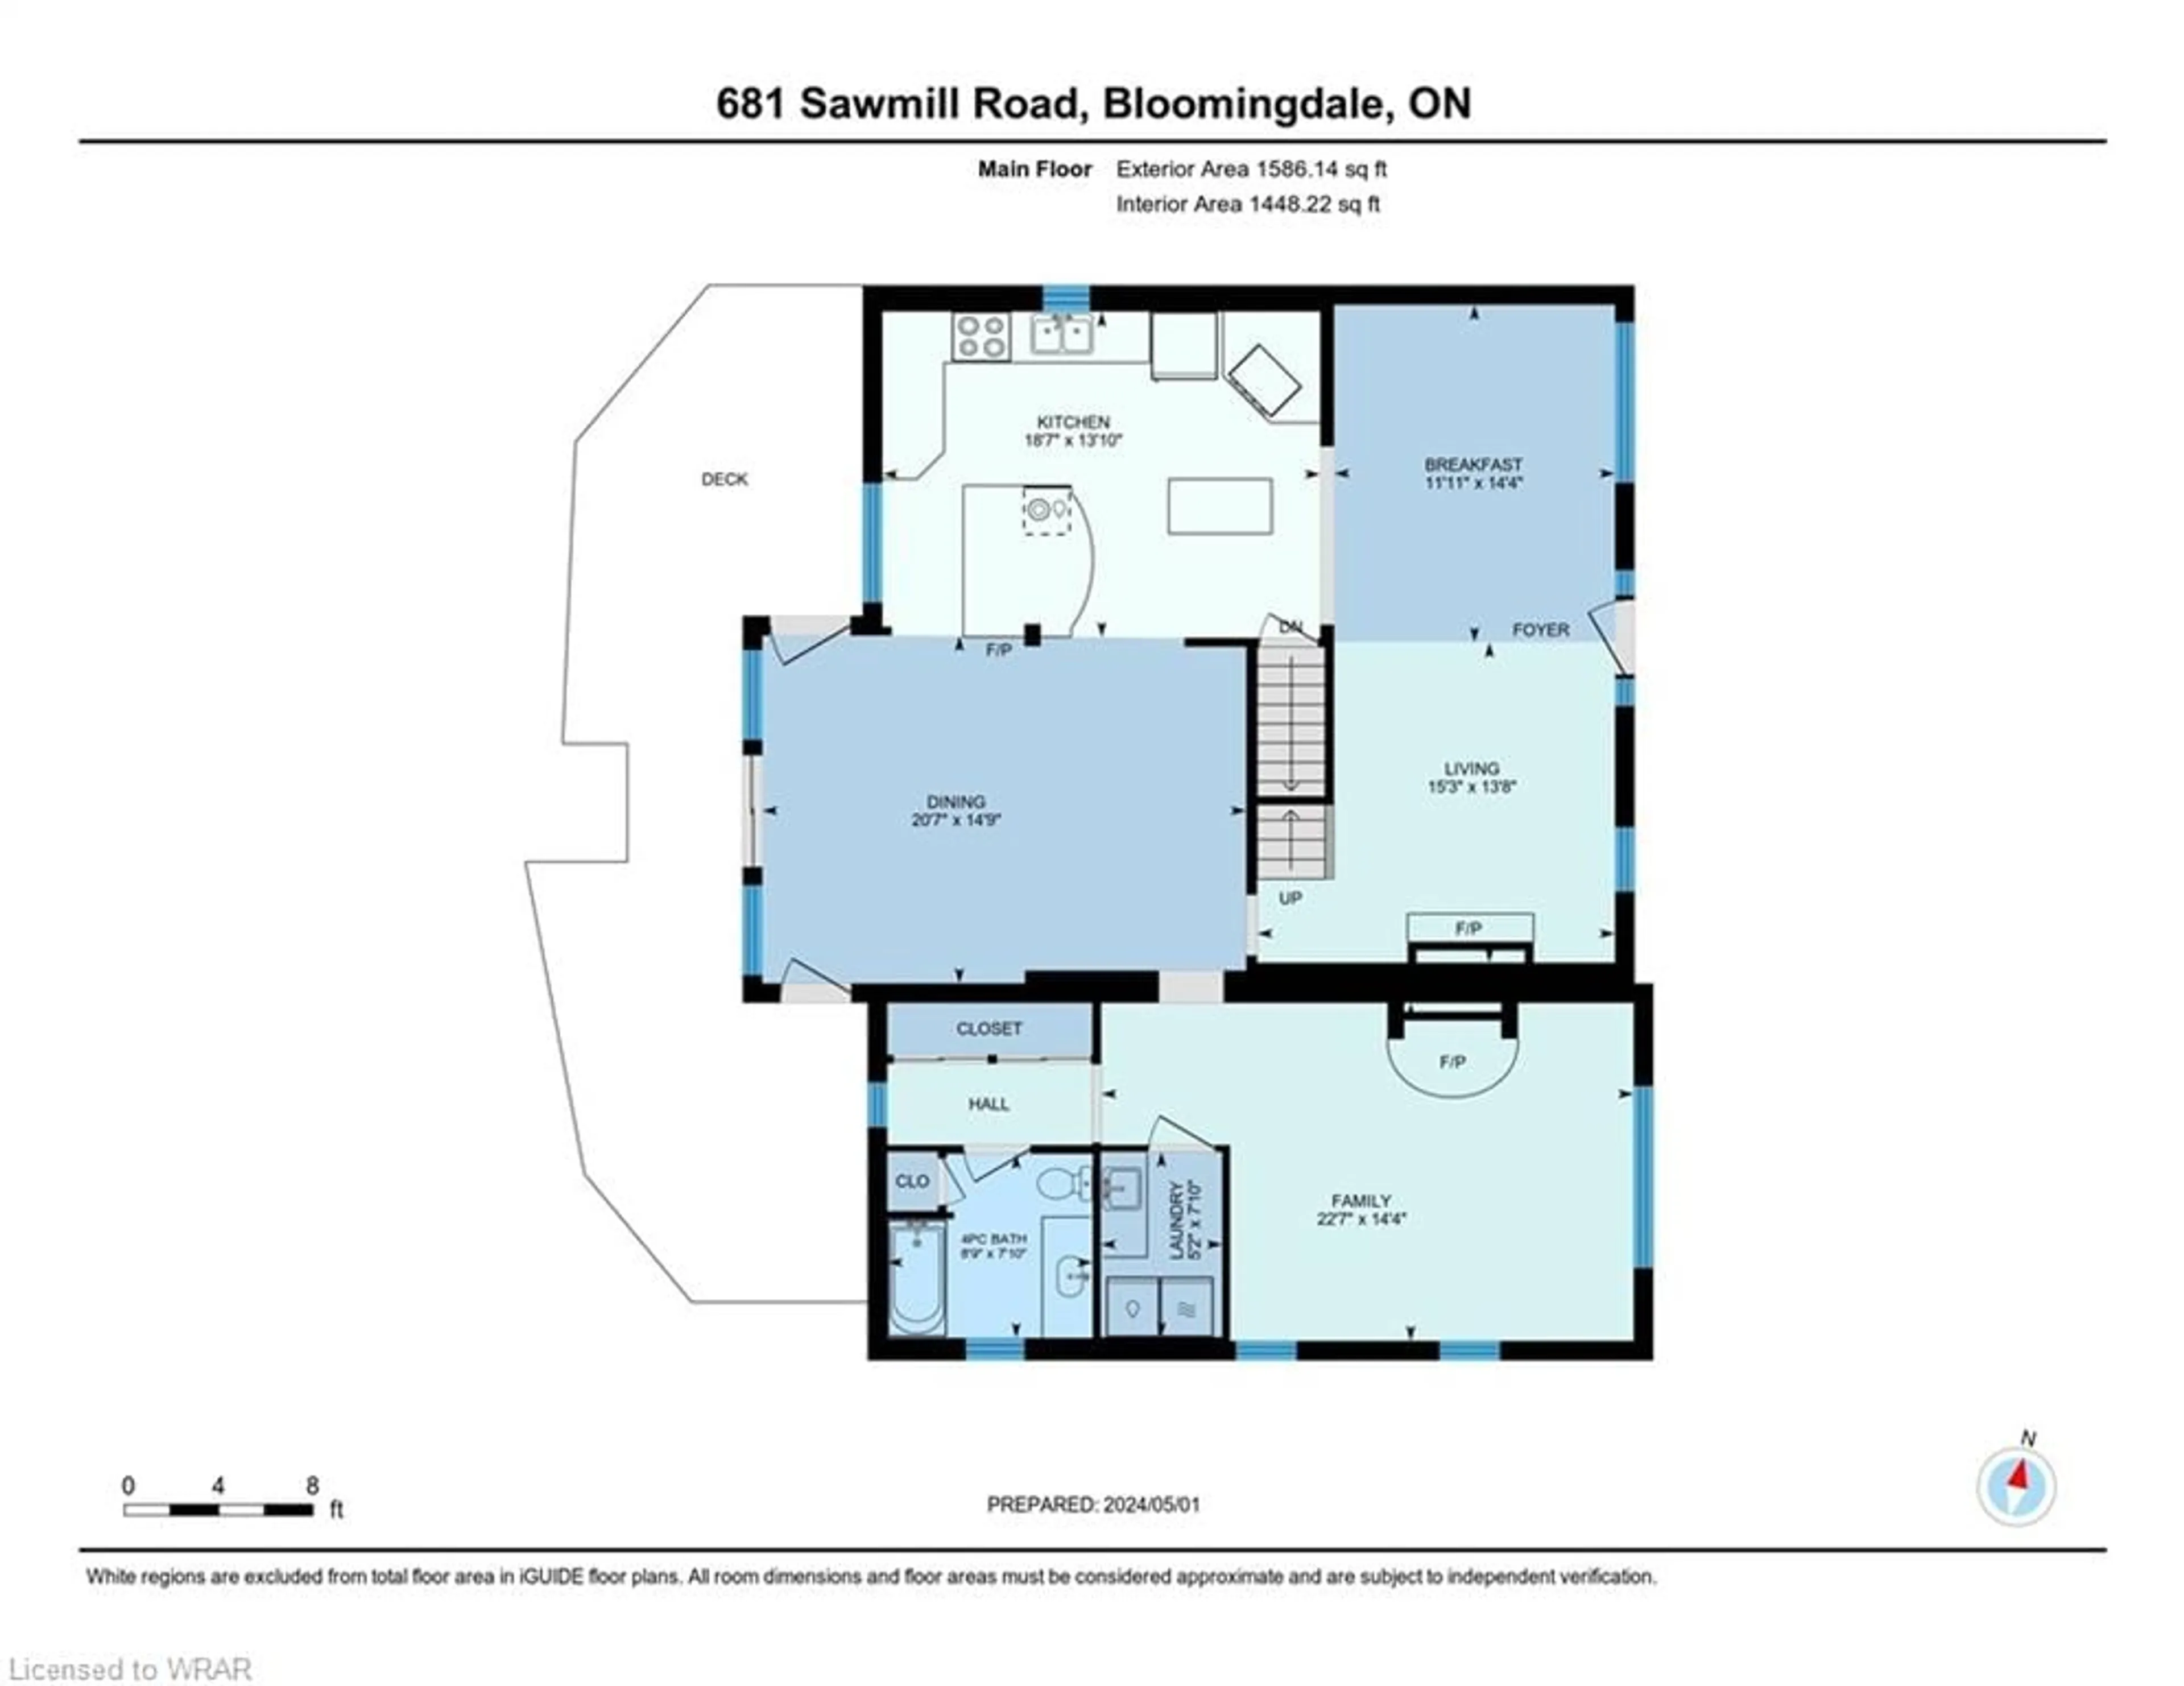 Floor plan for 681 Sawmill Rd, Bloomingdale Ontario N0B 1K0